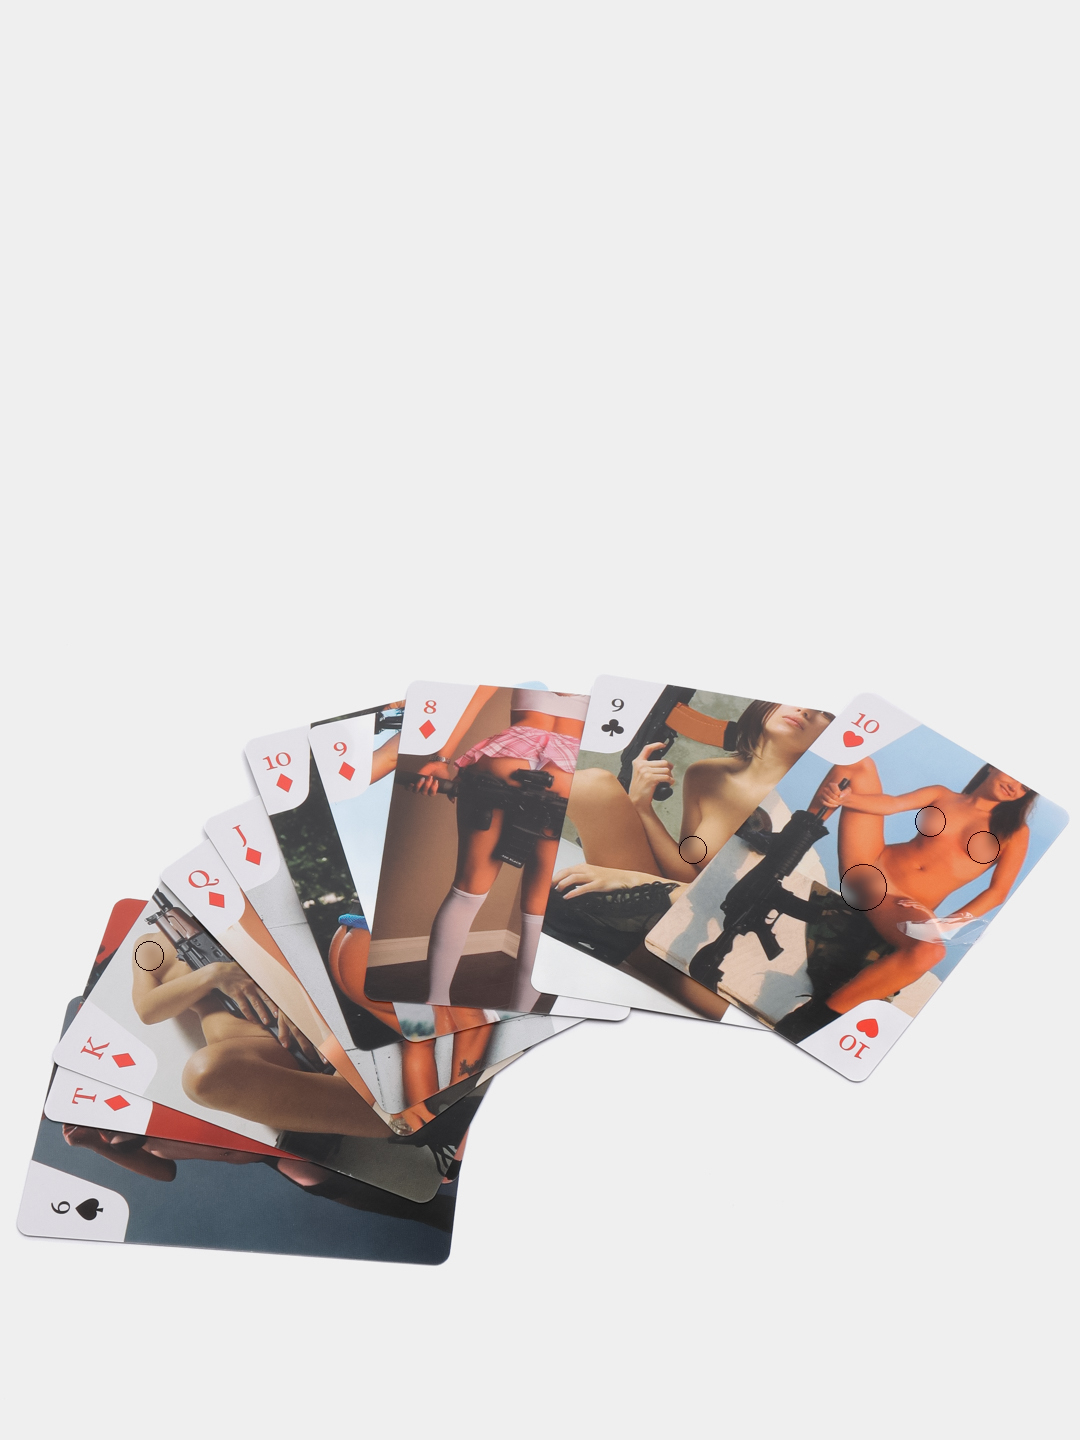 карточки с голыми девушками